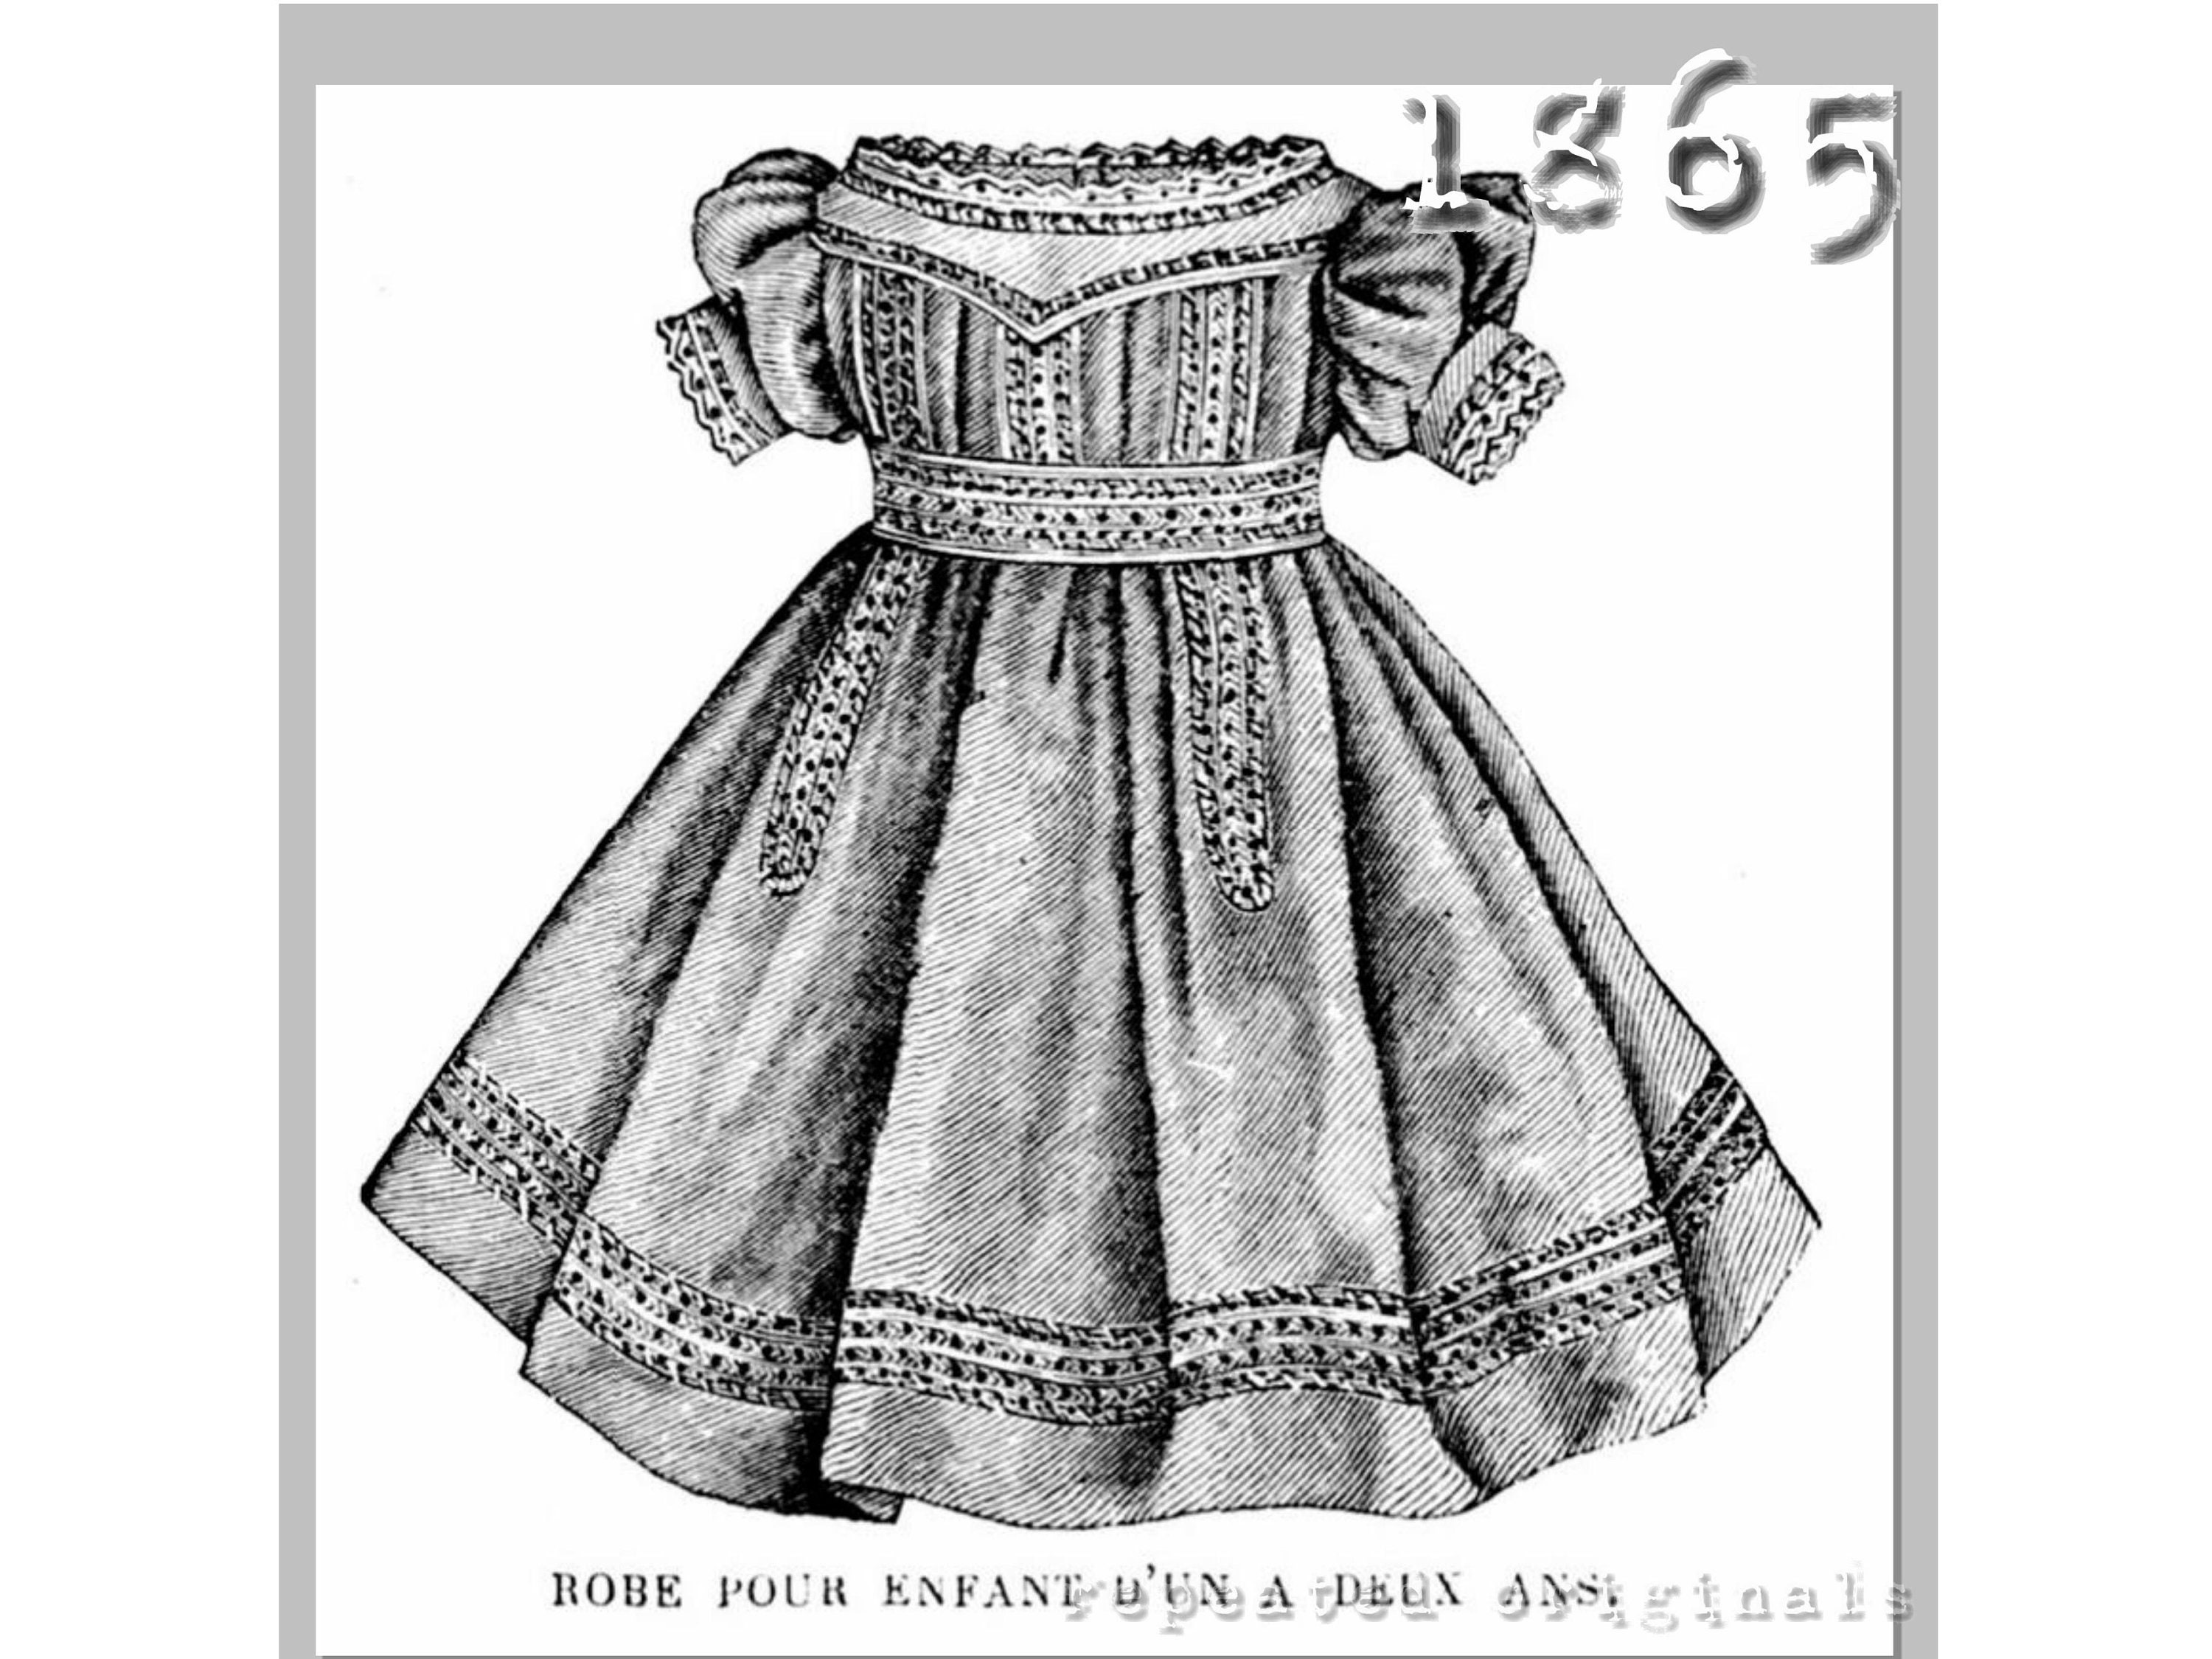 maternity underwear undergarments 1907 patterns 1900s